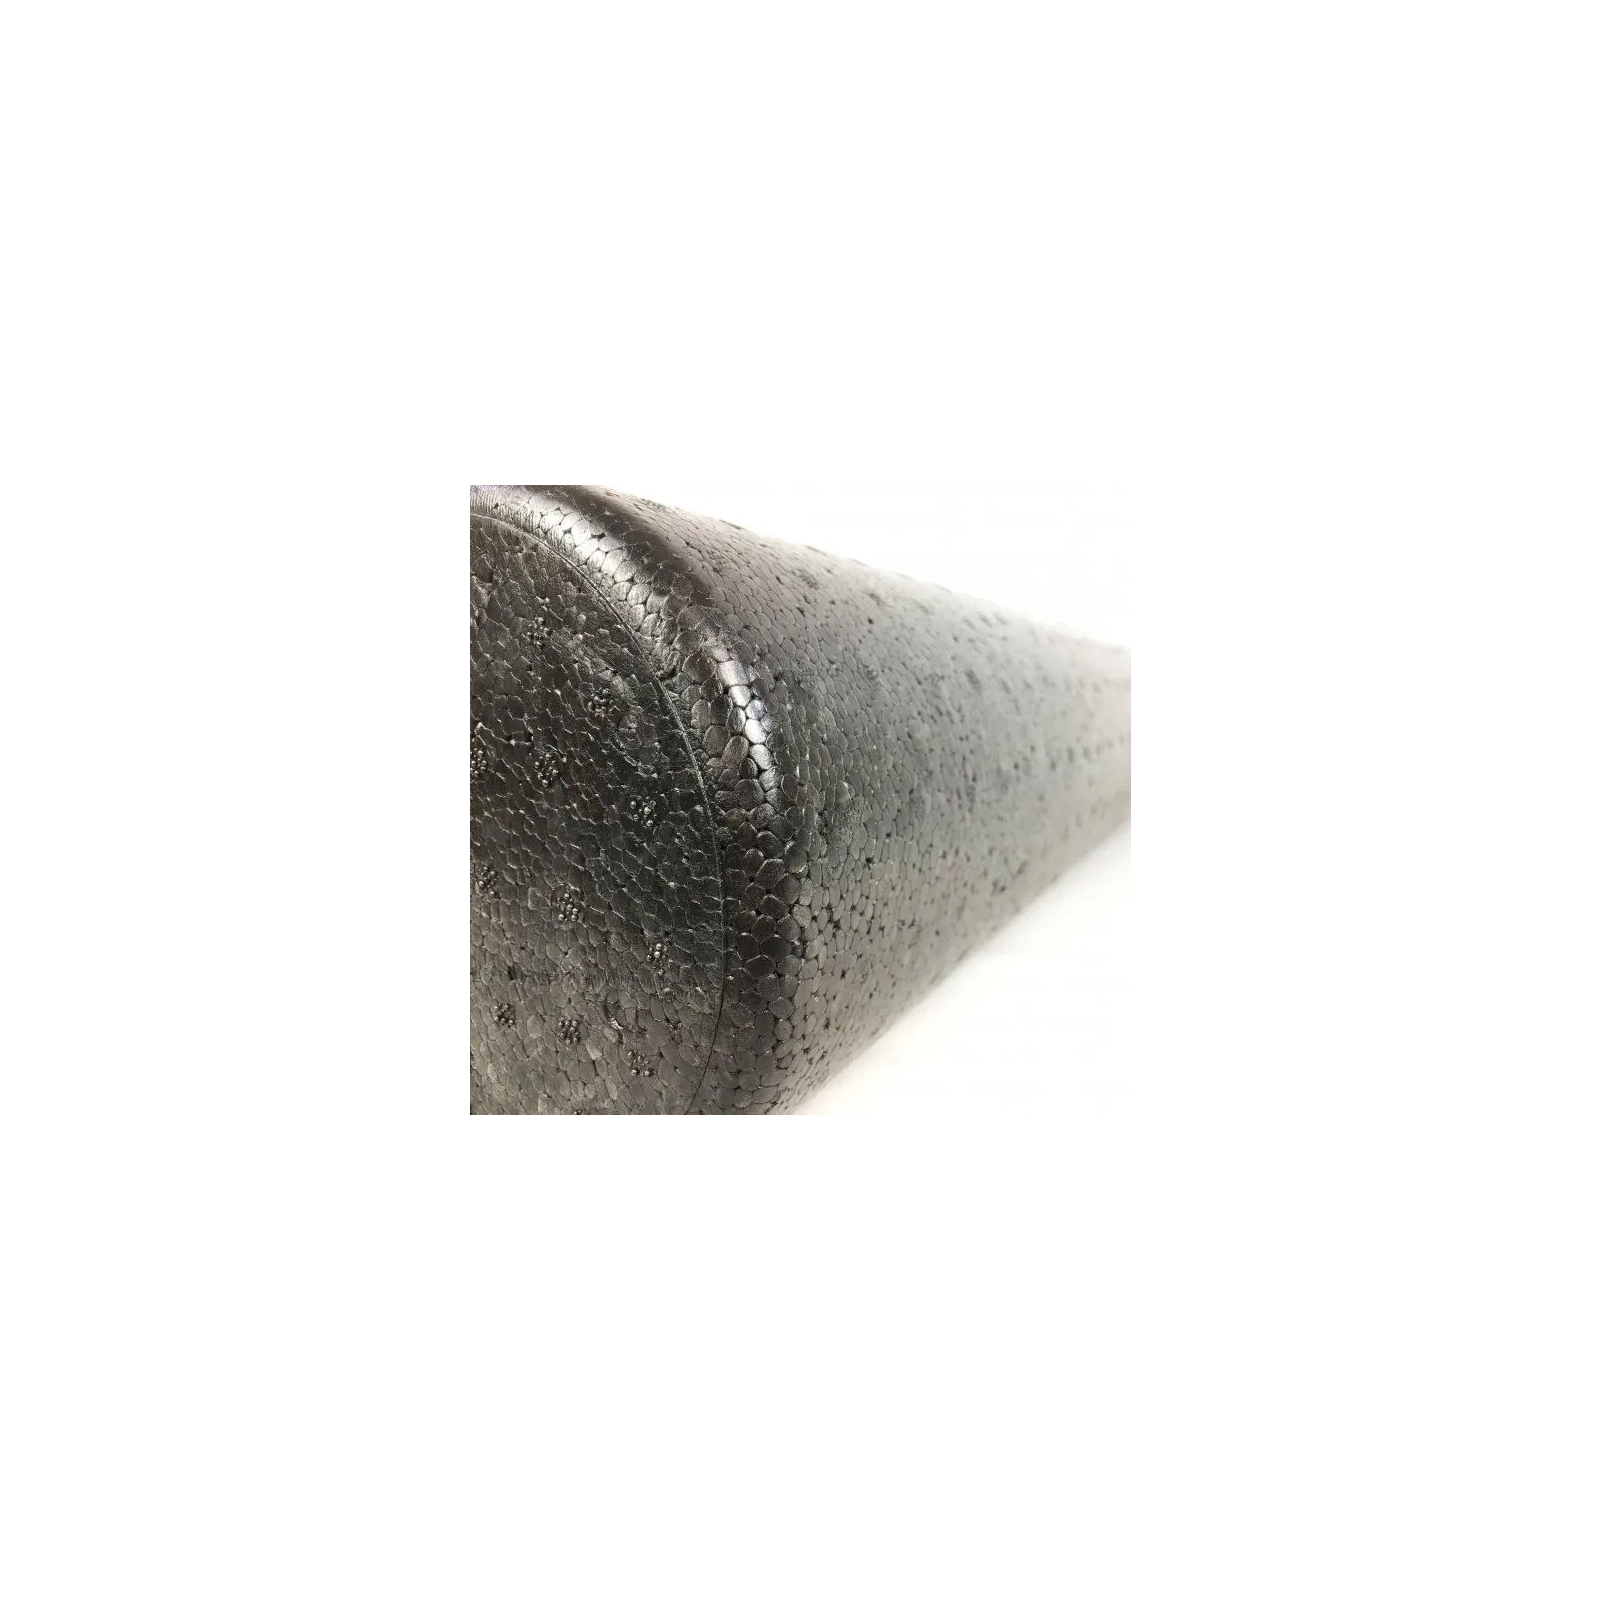 Масажный ролик U-Powex гладкий UP_1008 EPP foam roller 45х15cm (UP_1008_epp_(45cm)) изображение 7